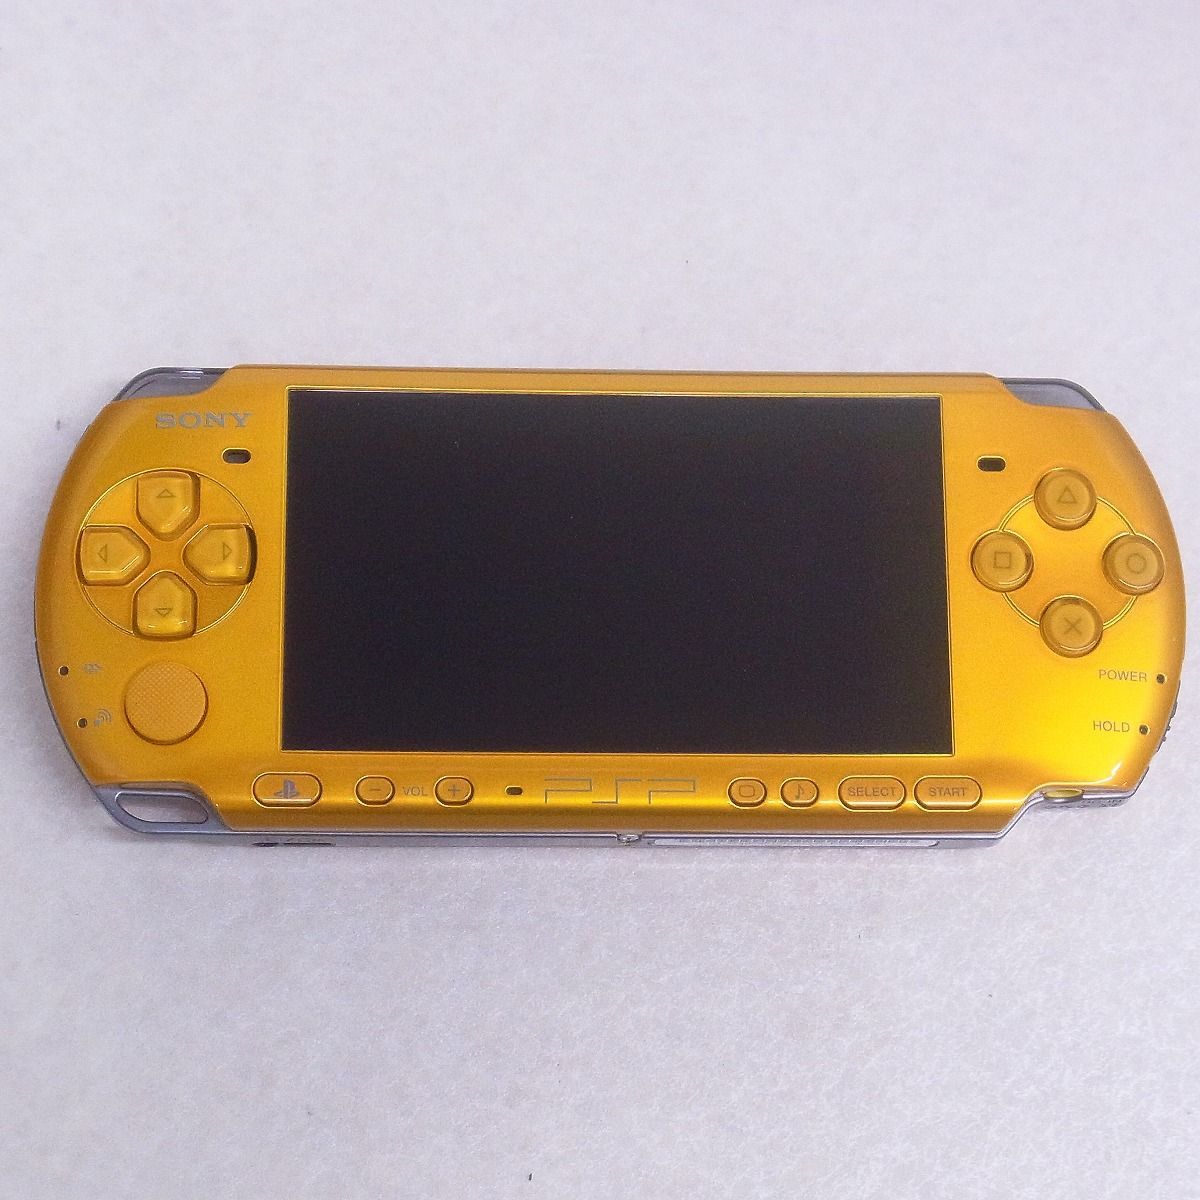 PSP 本体 ブライト・イエロー PSP-3000 ソニー SONY 箱説+ソフト付